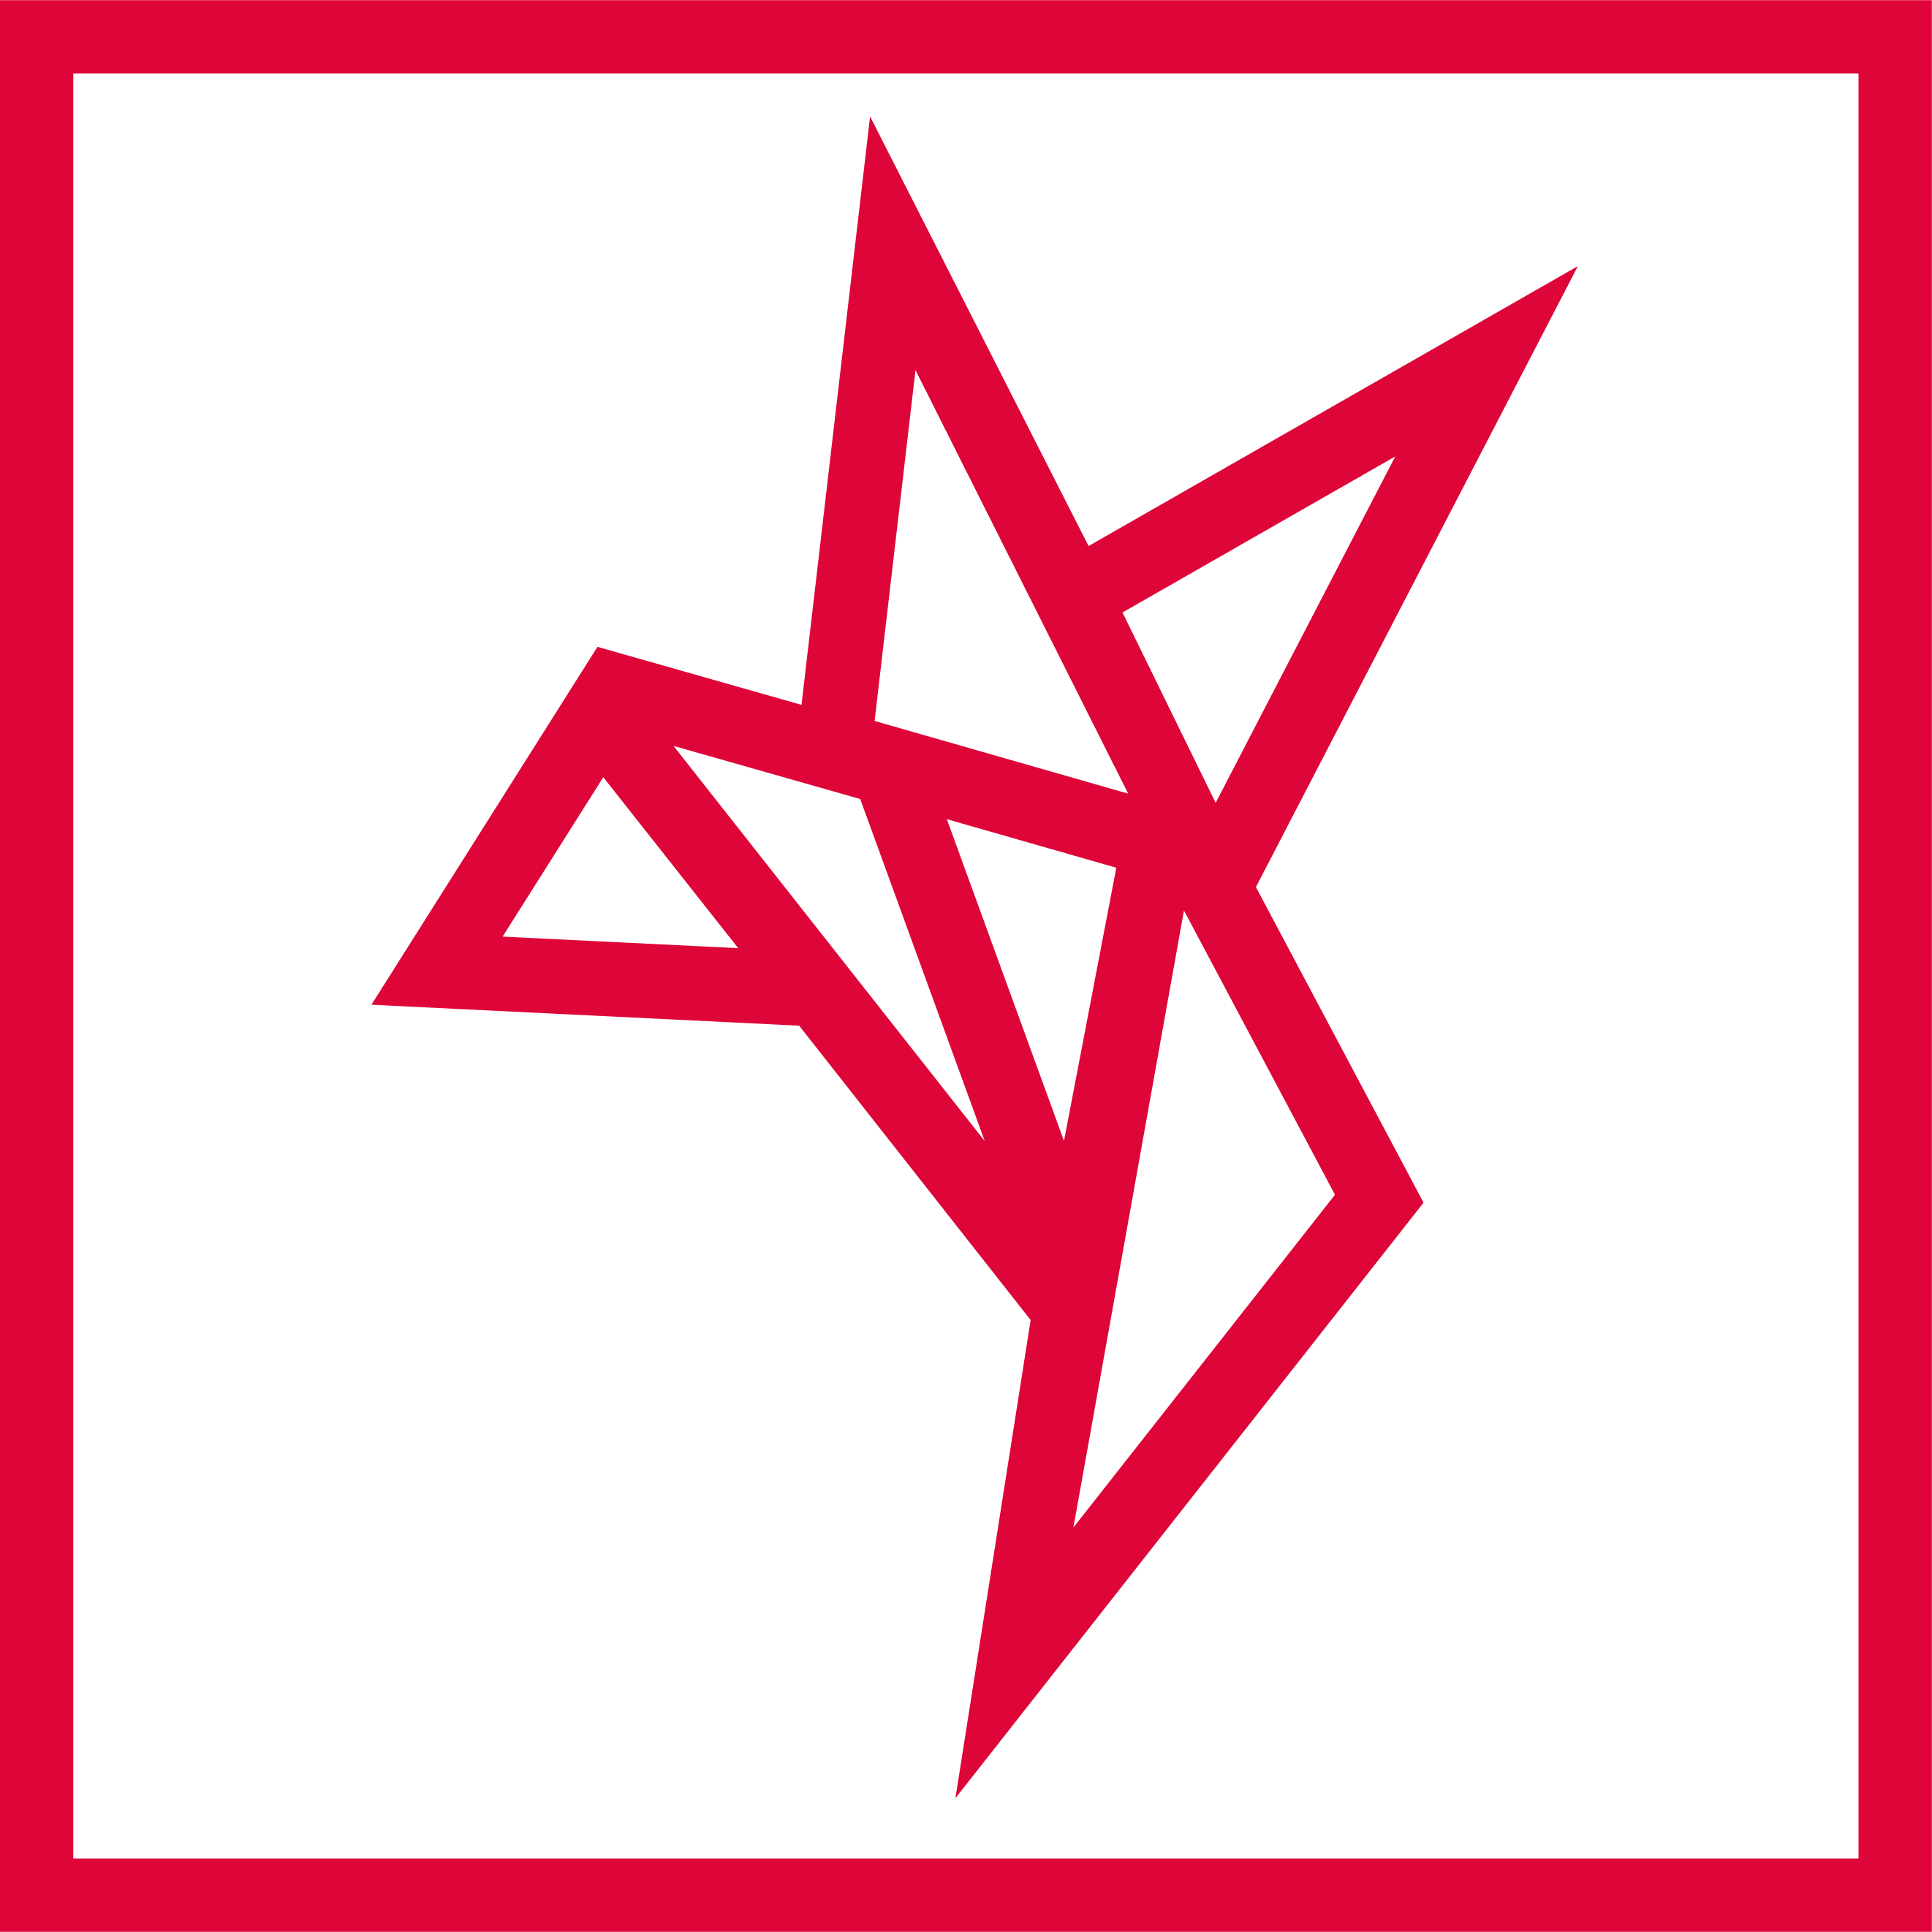 mindtwo logo